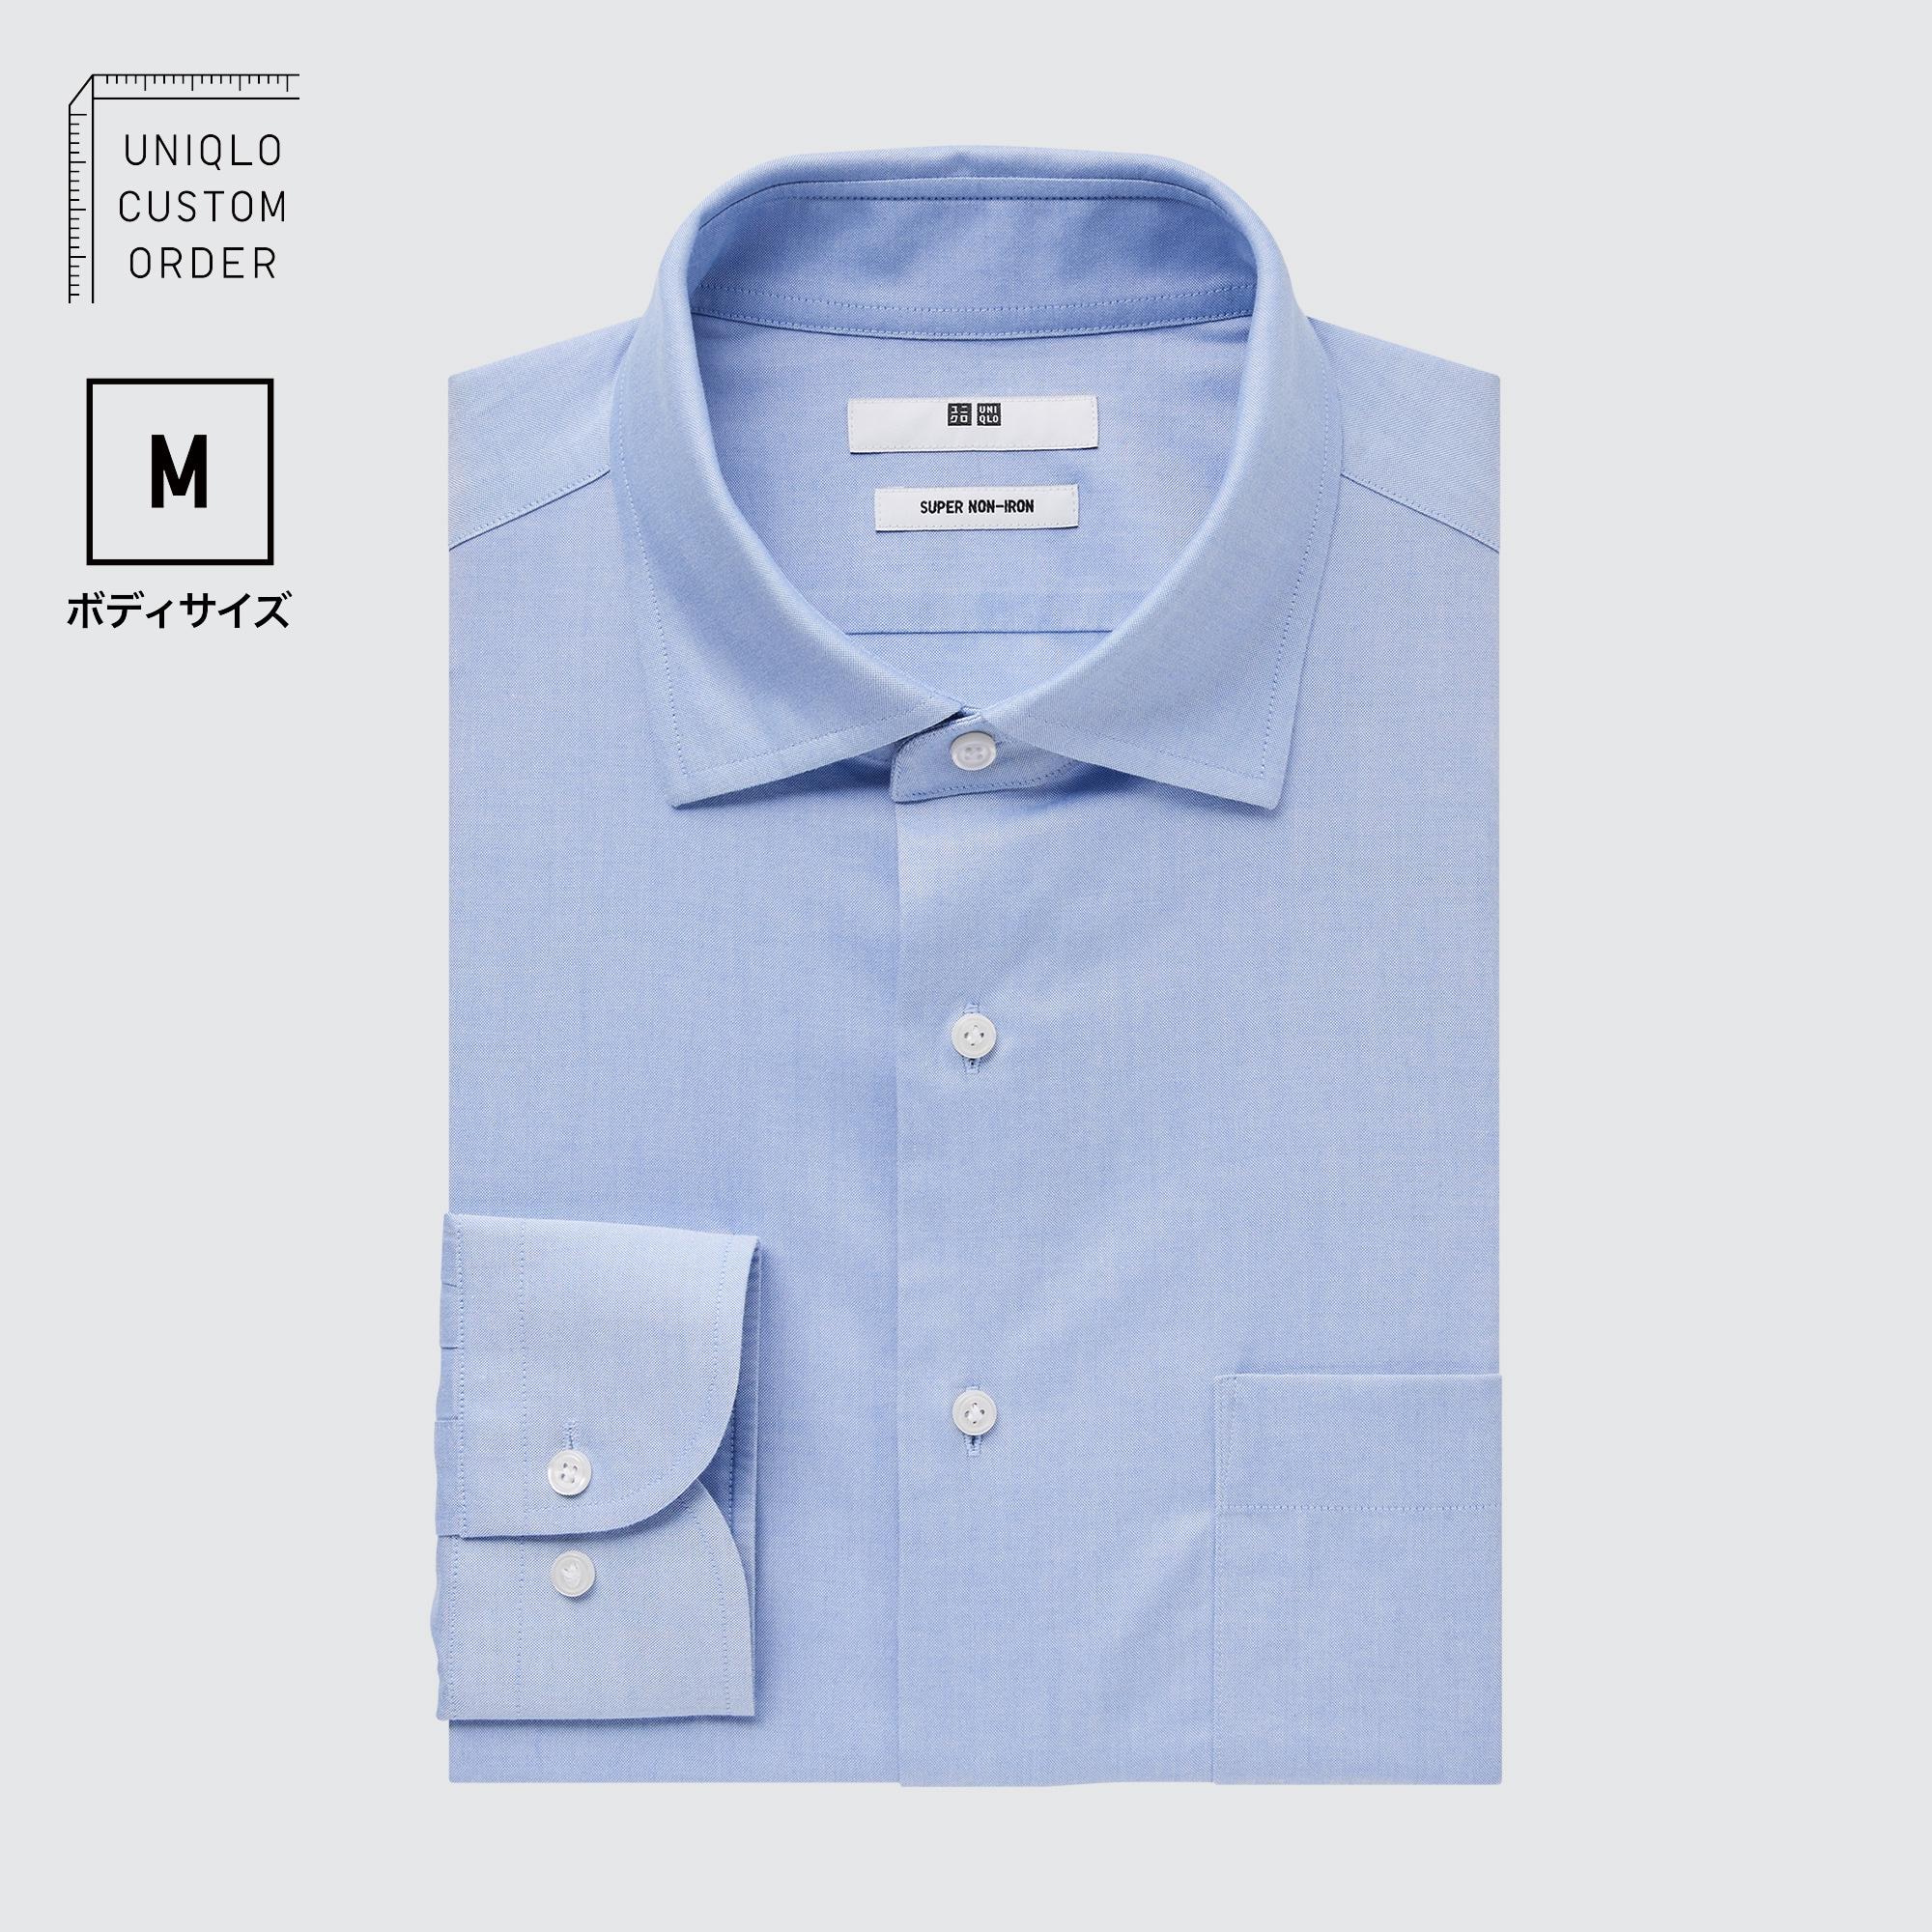 ワイシャツ メンズ サイズの関連商品 | ユニクロ